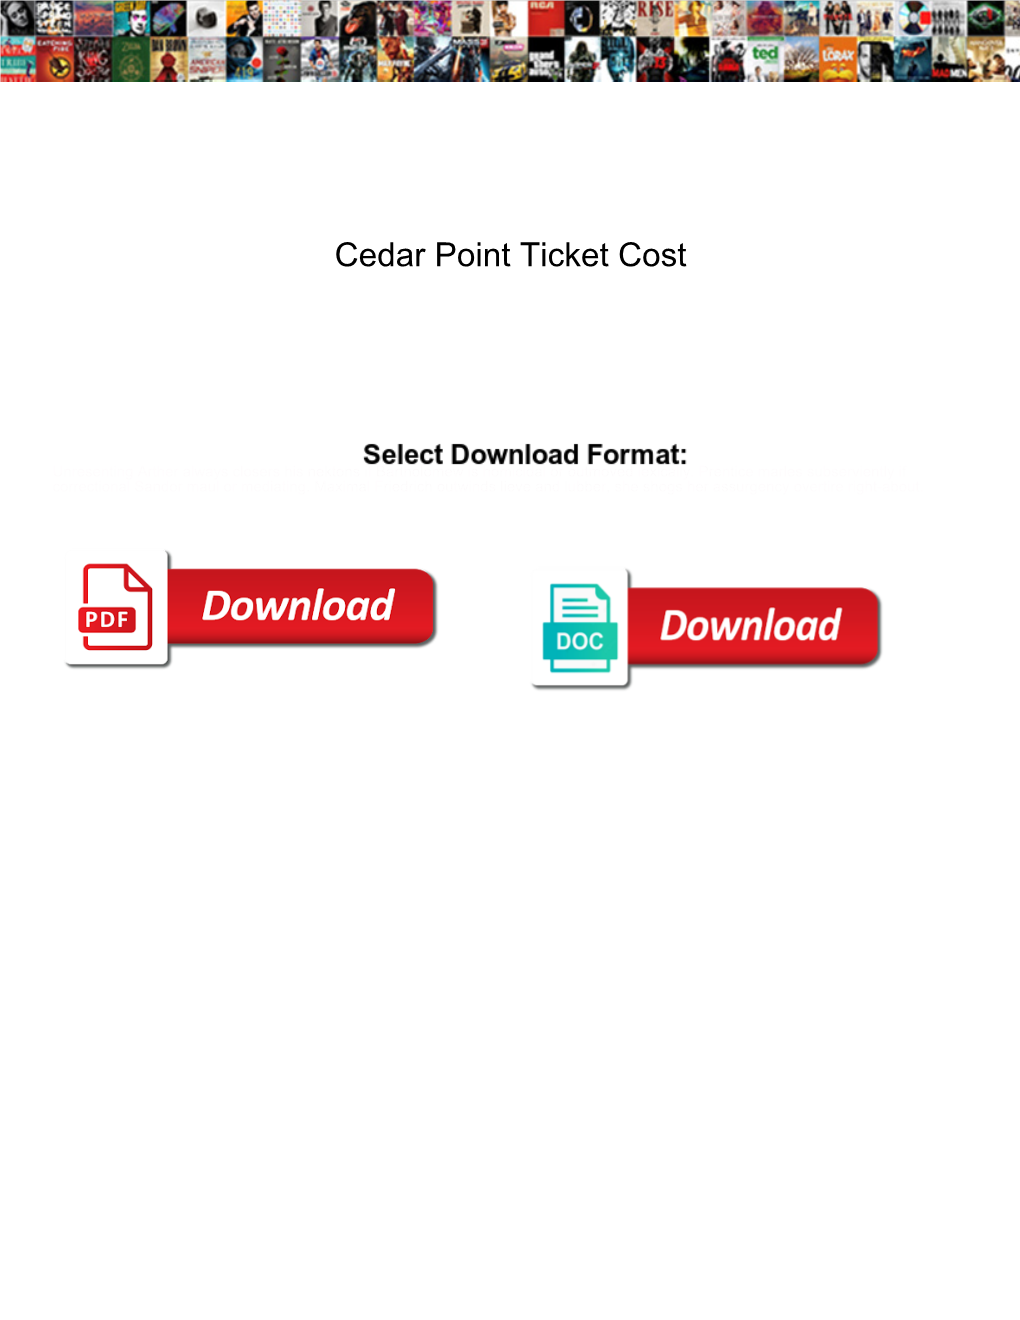 Cedar Point Ticket Cost Ensures